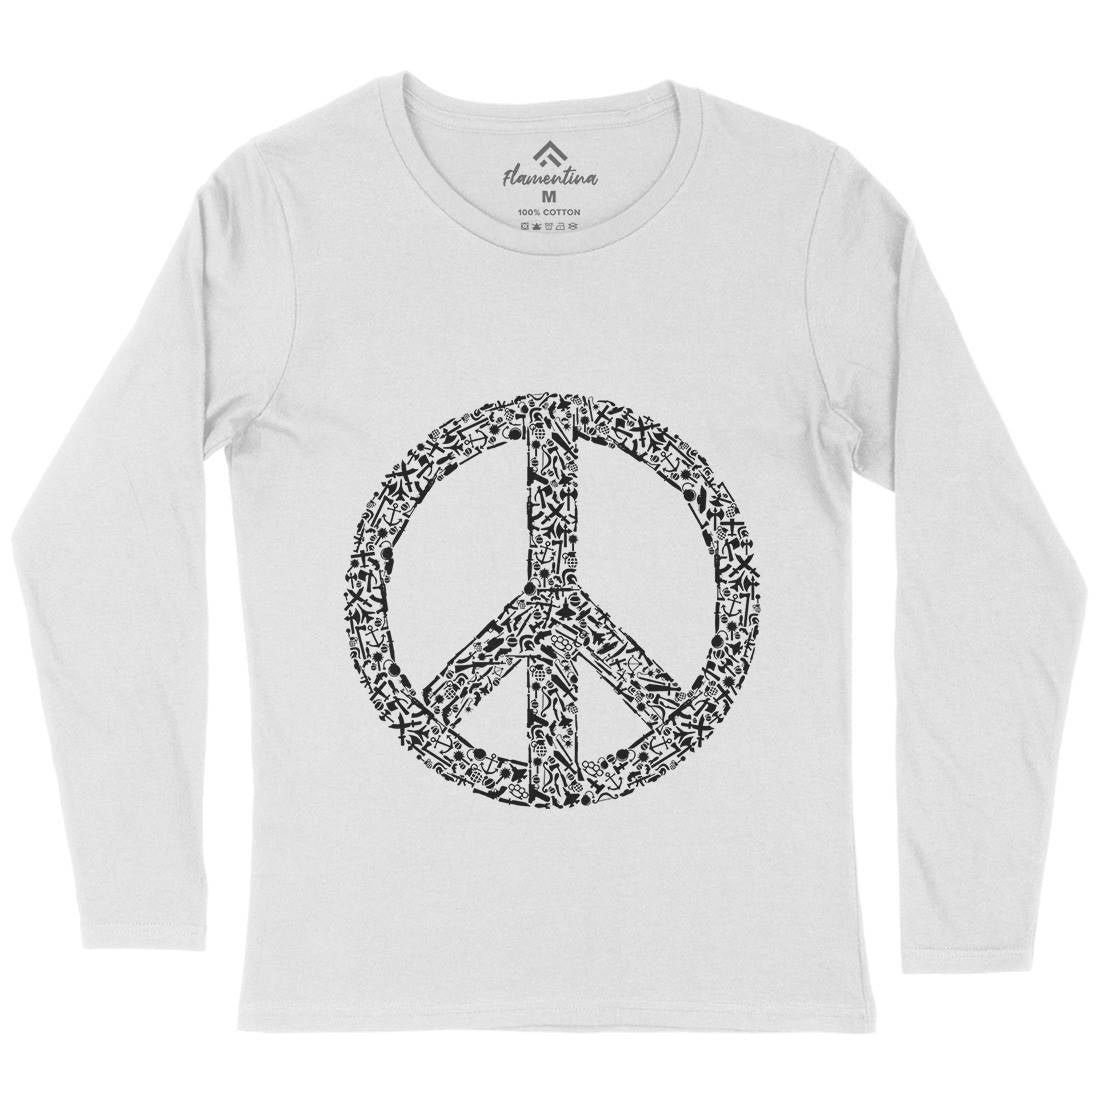 War Womens Long Sleeve T-Shirt Peace B093